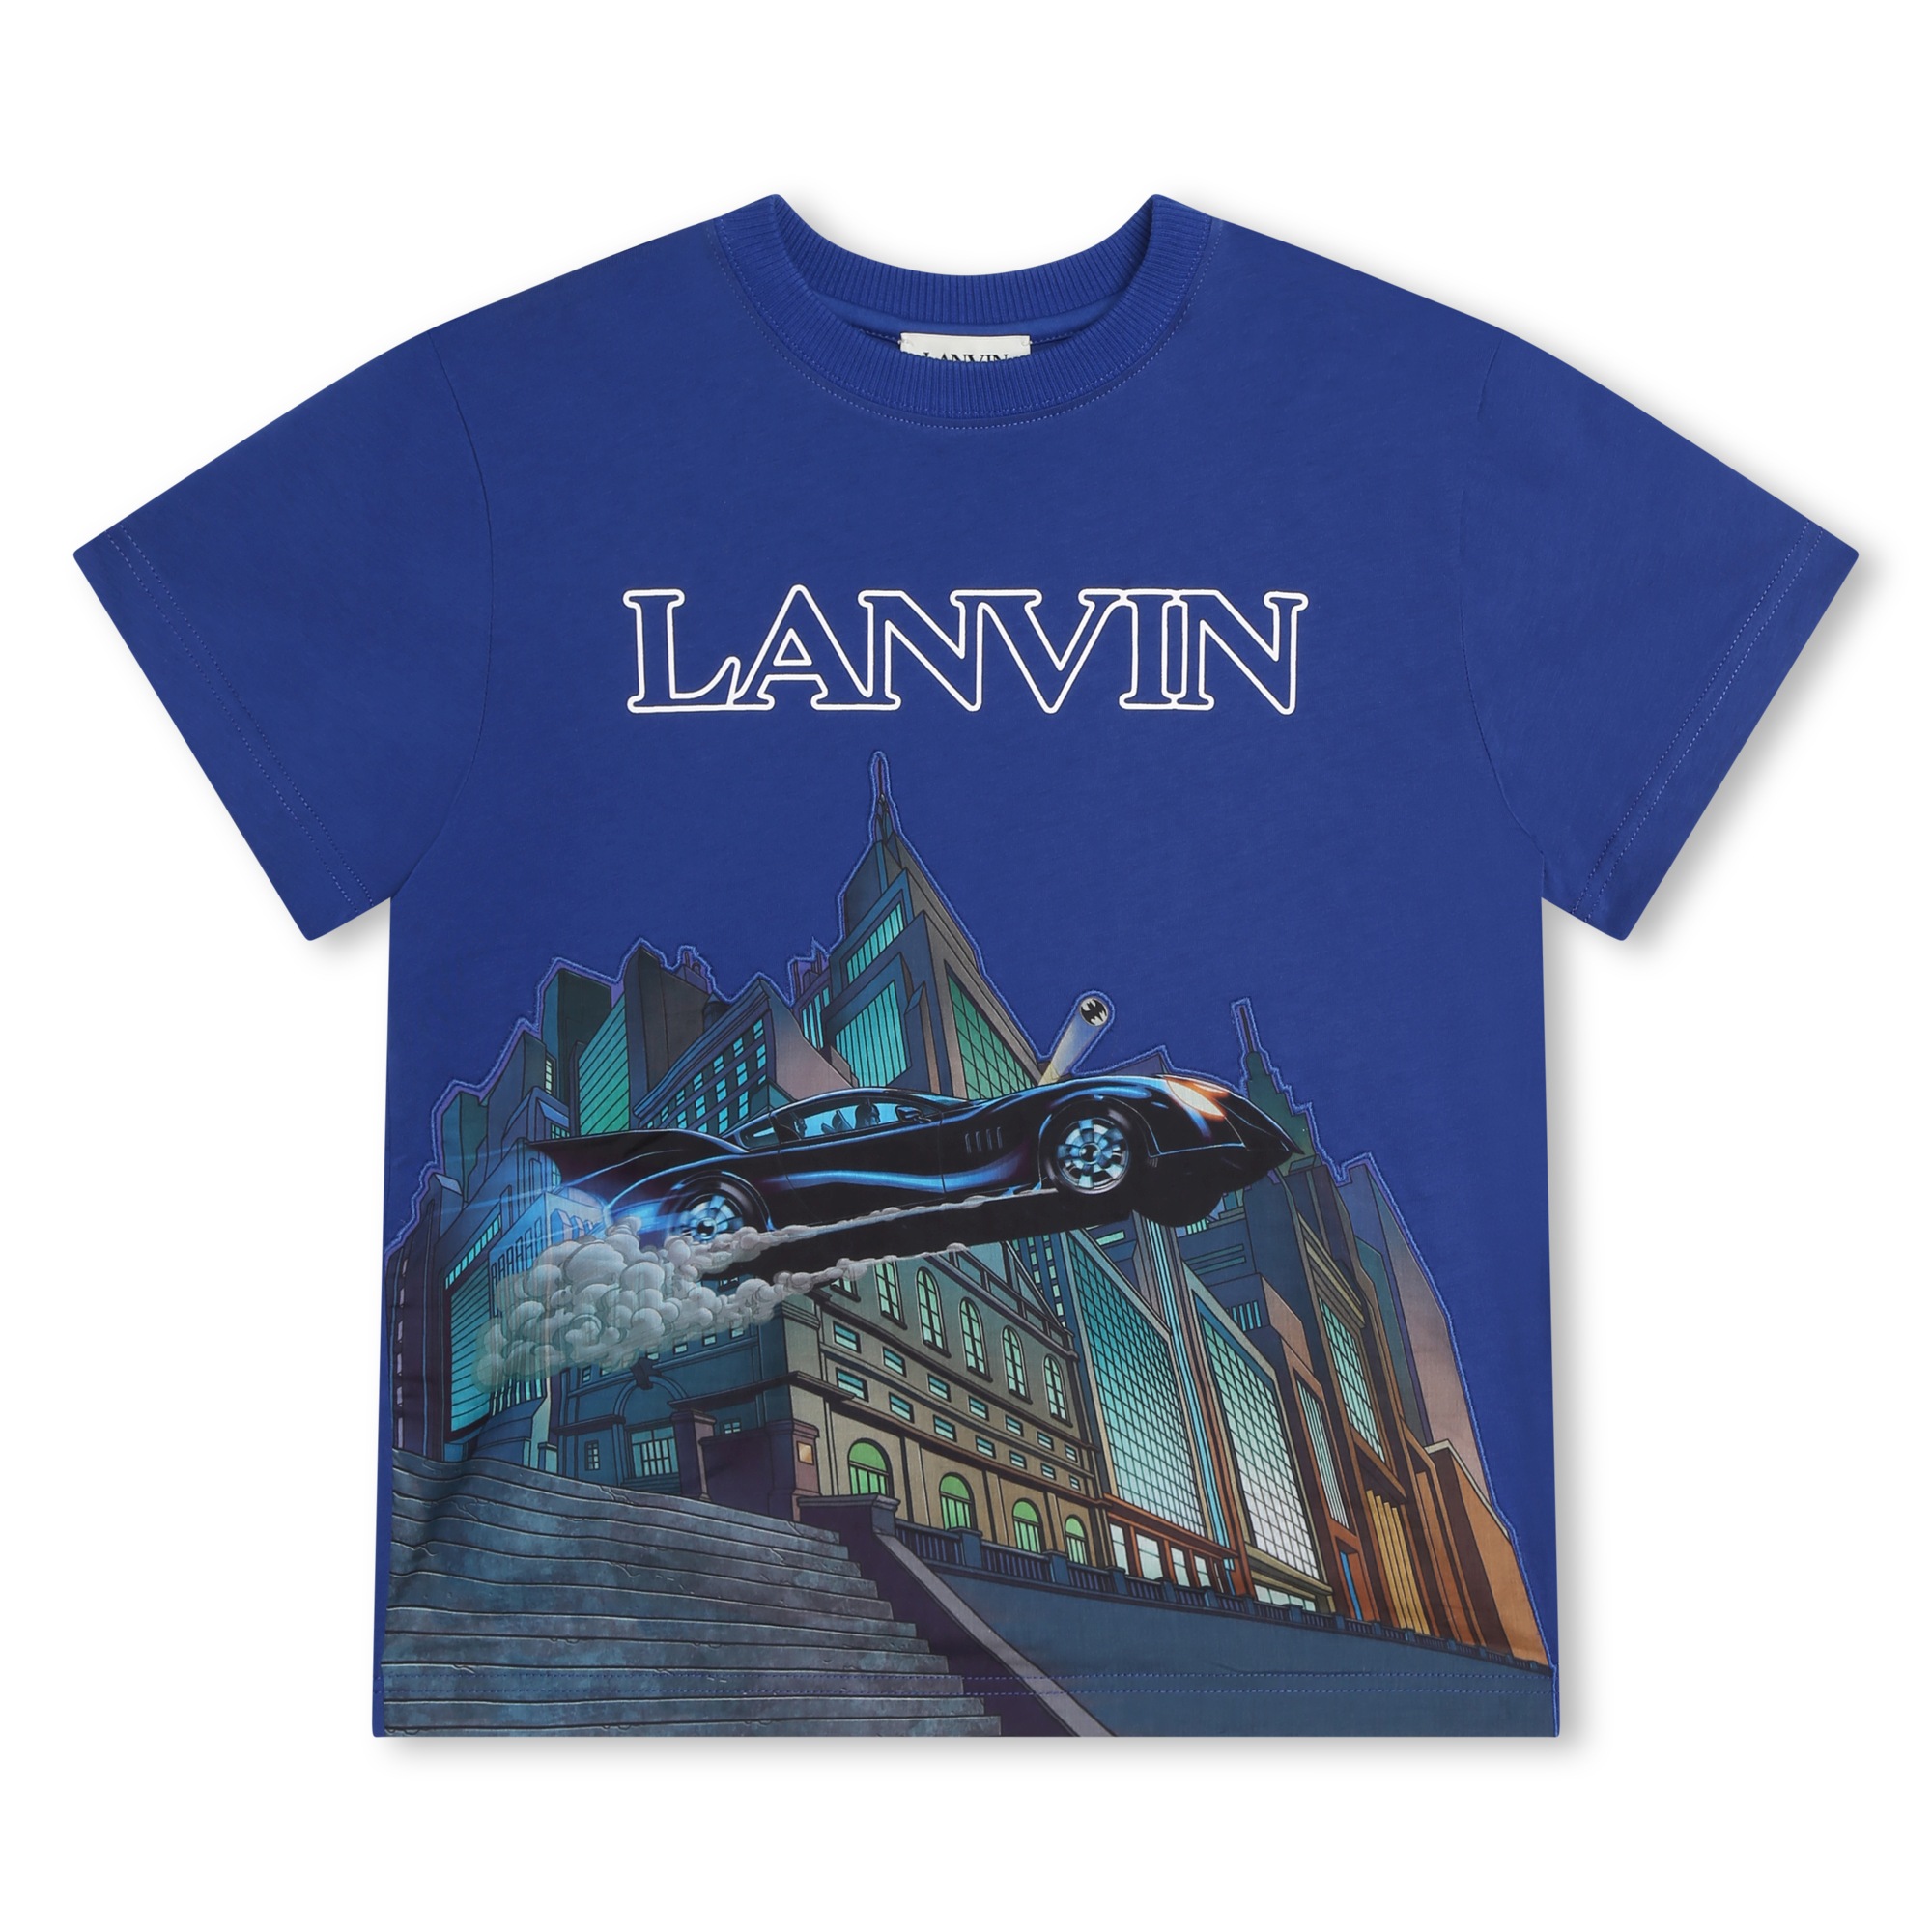 T-shirt met 'Batmobile'-print LANVIN Voor